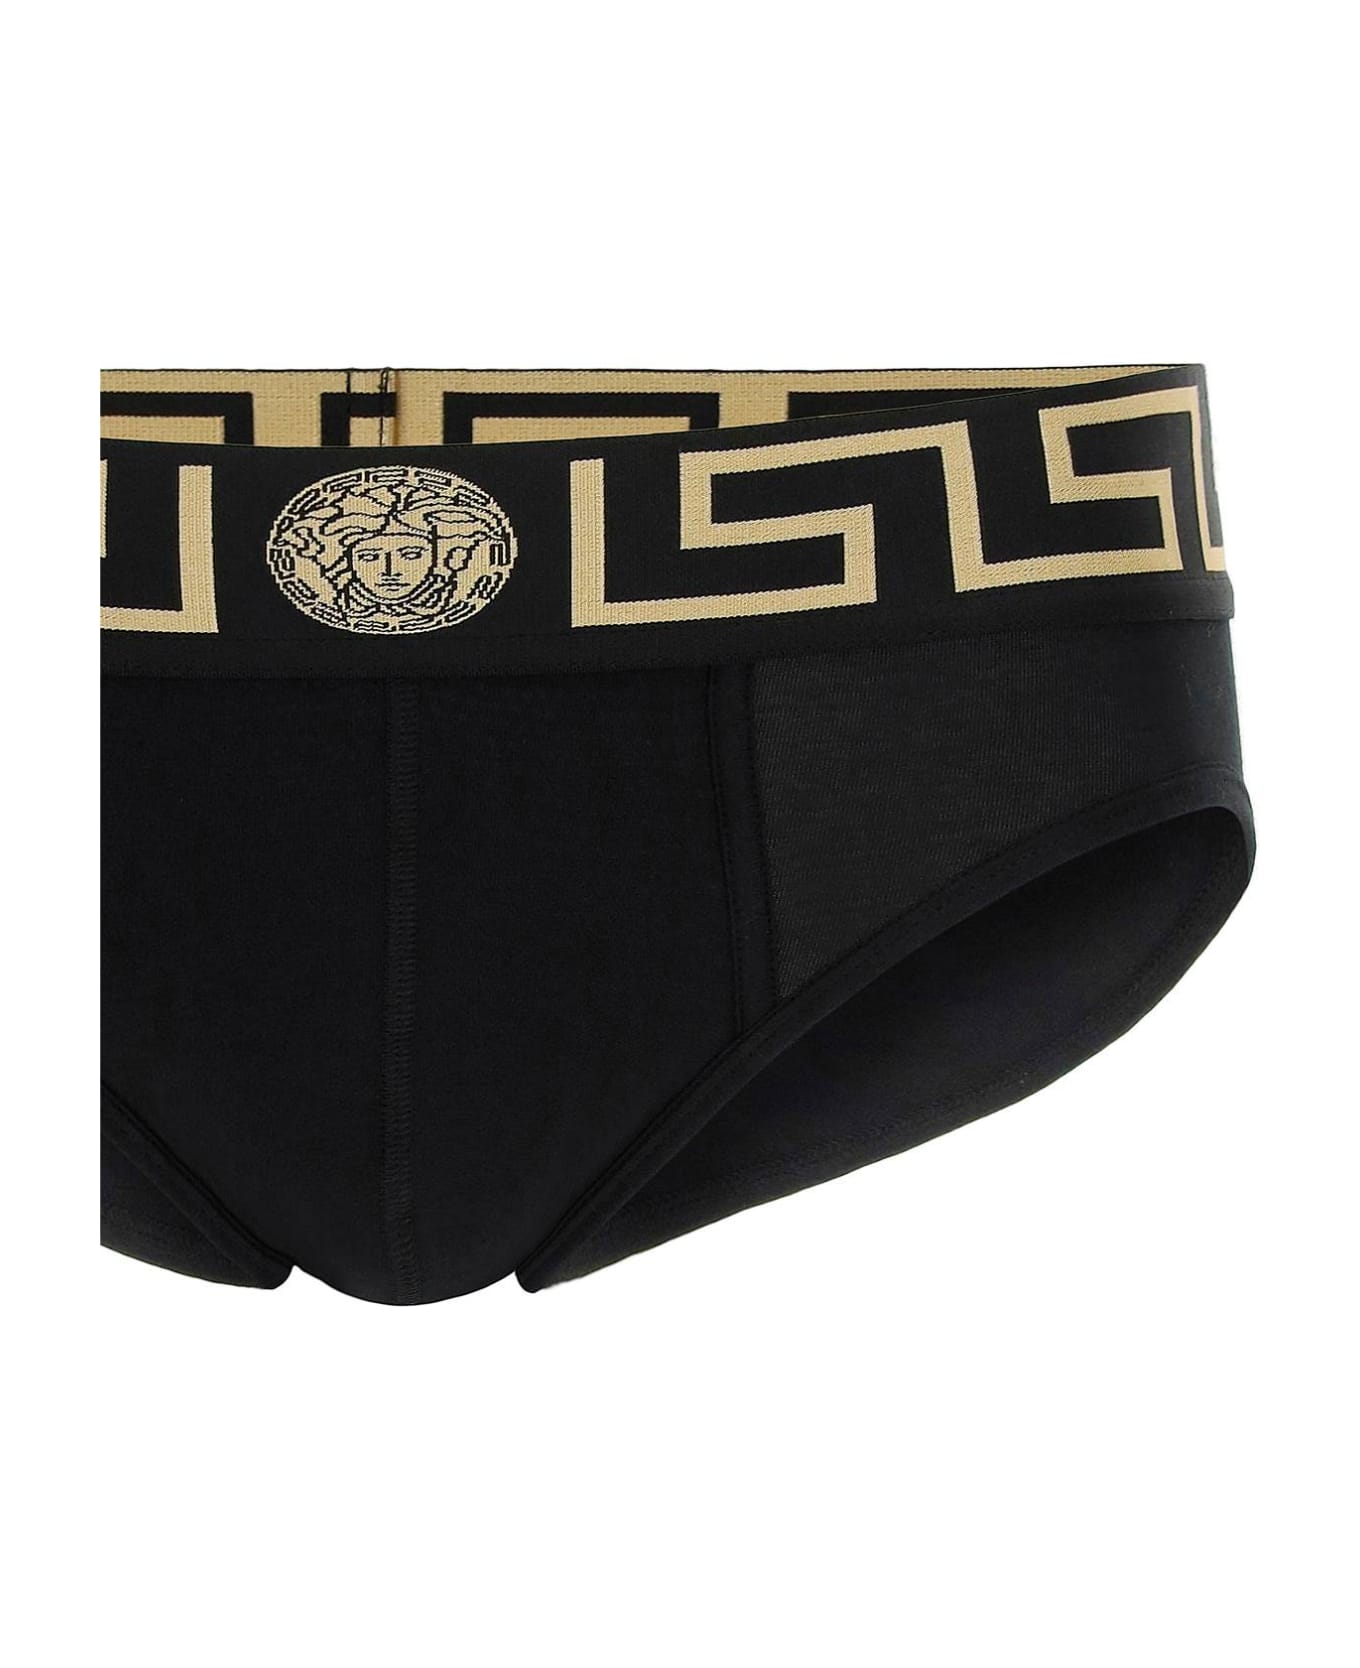 Versace Underwear Briefs Tri-pack - BLACK GOLD GREEK KEY (Black)